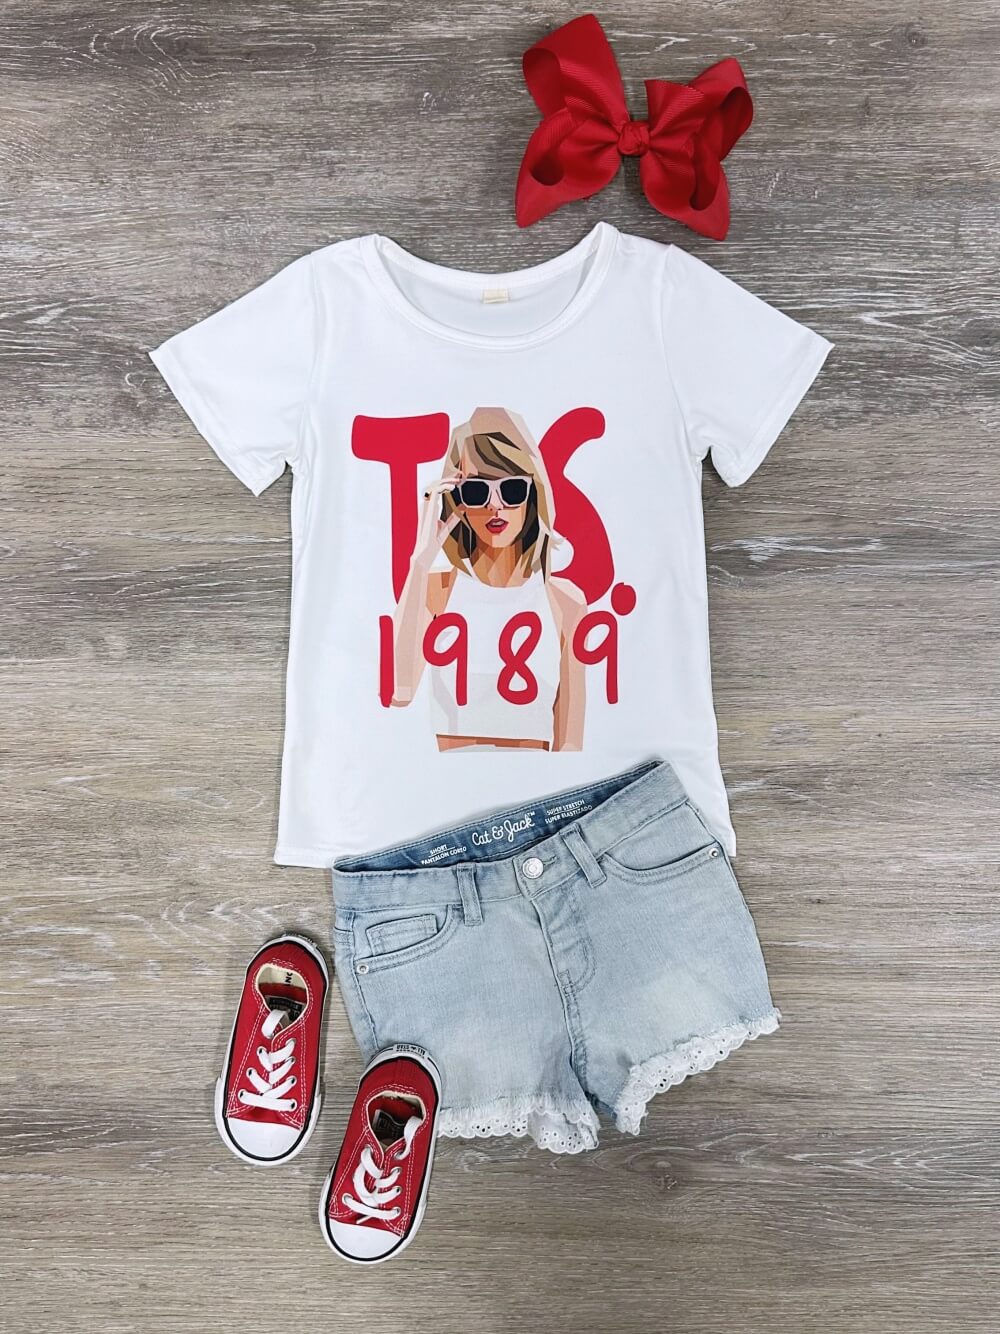 TS 1989 Red Girls Concert T-Shirt